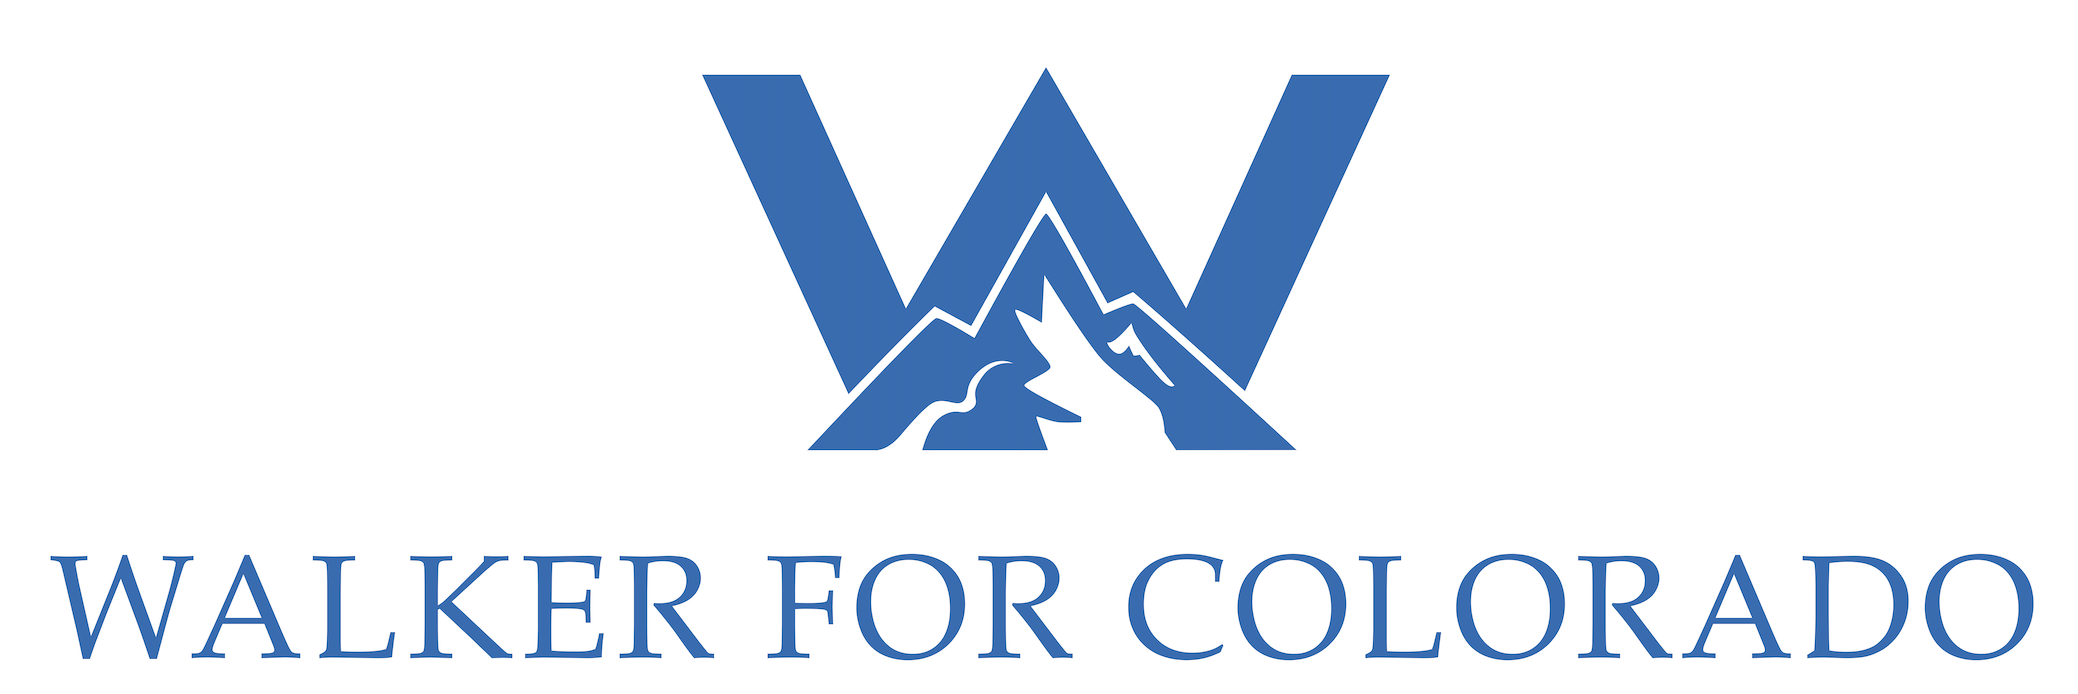 Walker for Colorado